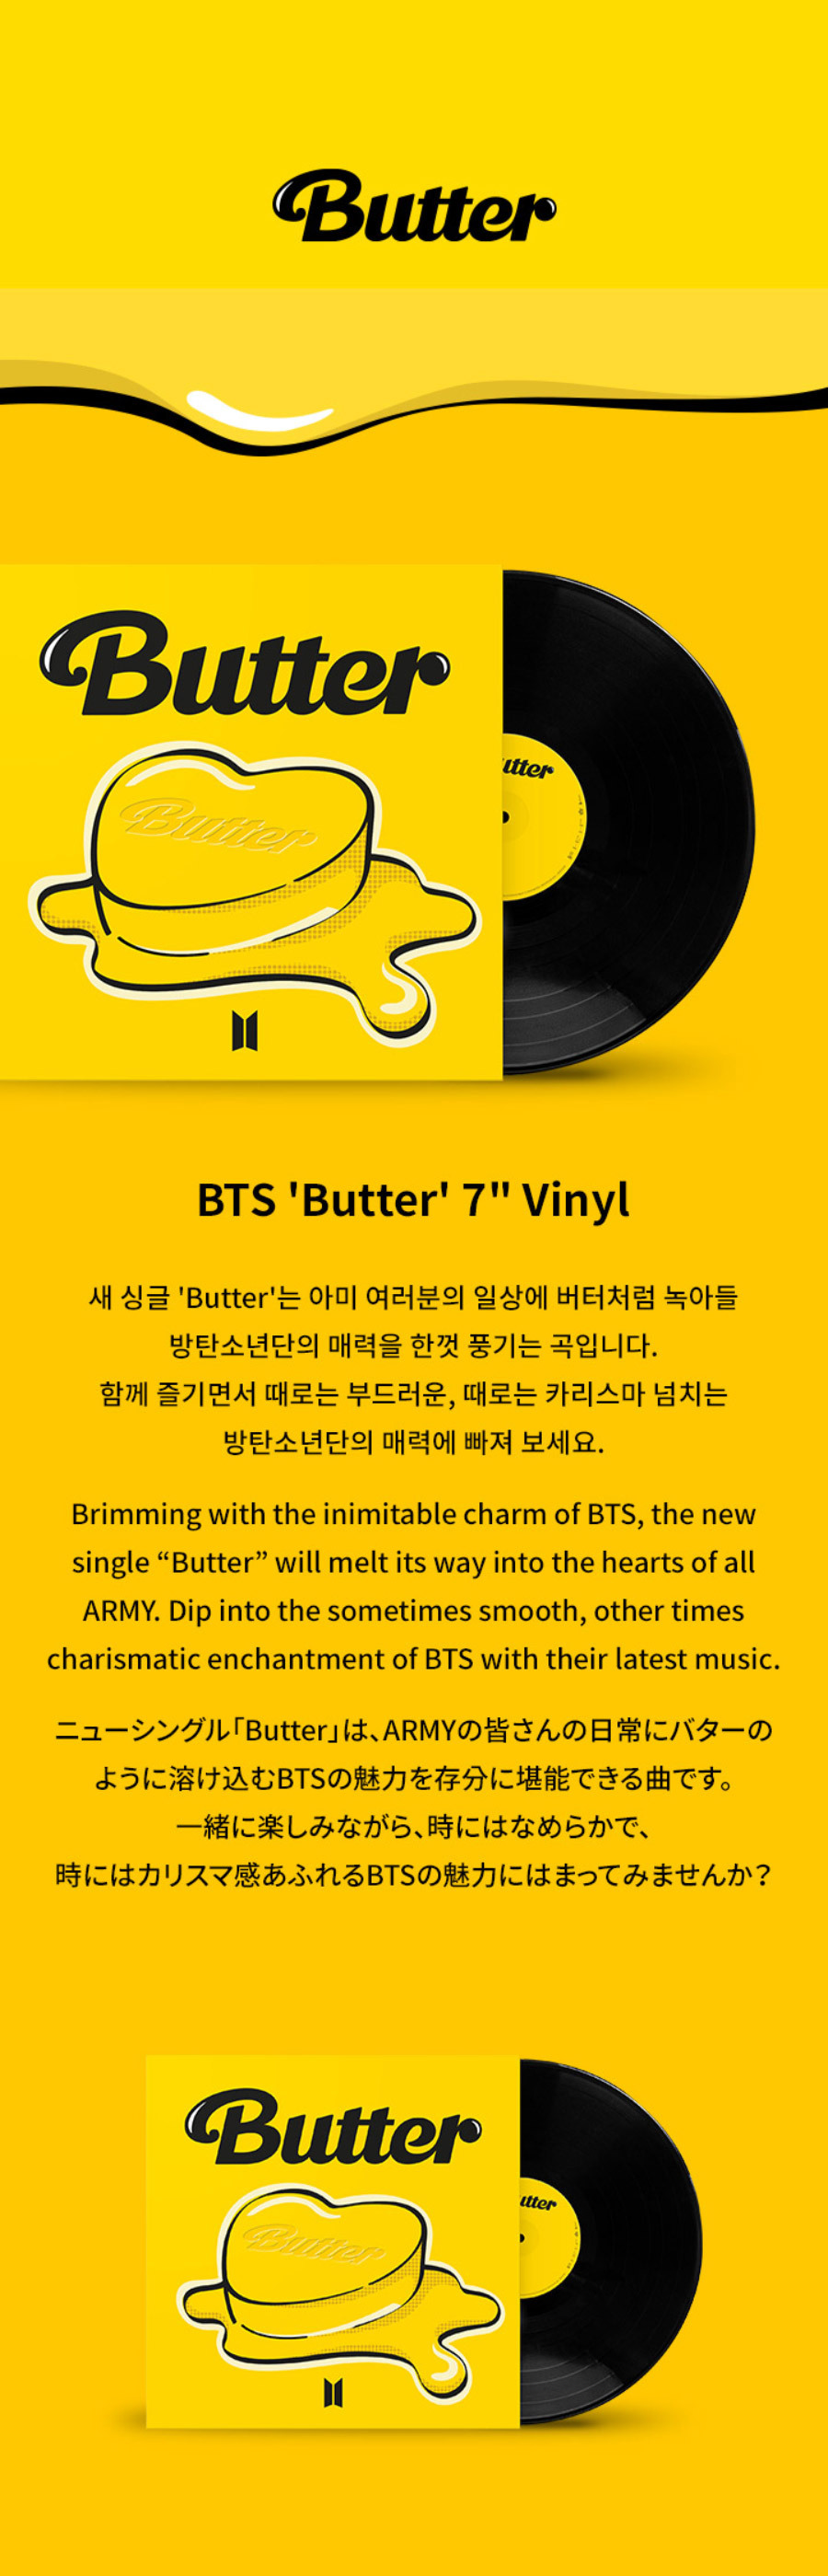 0bts_butter_vinyl